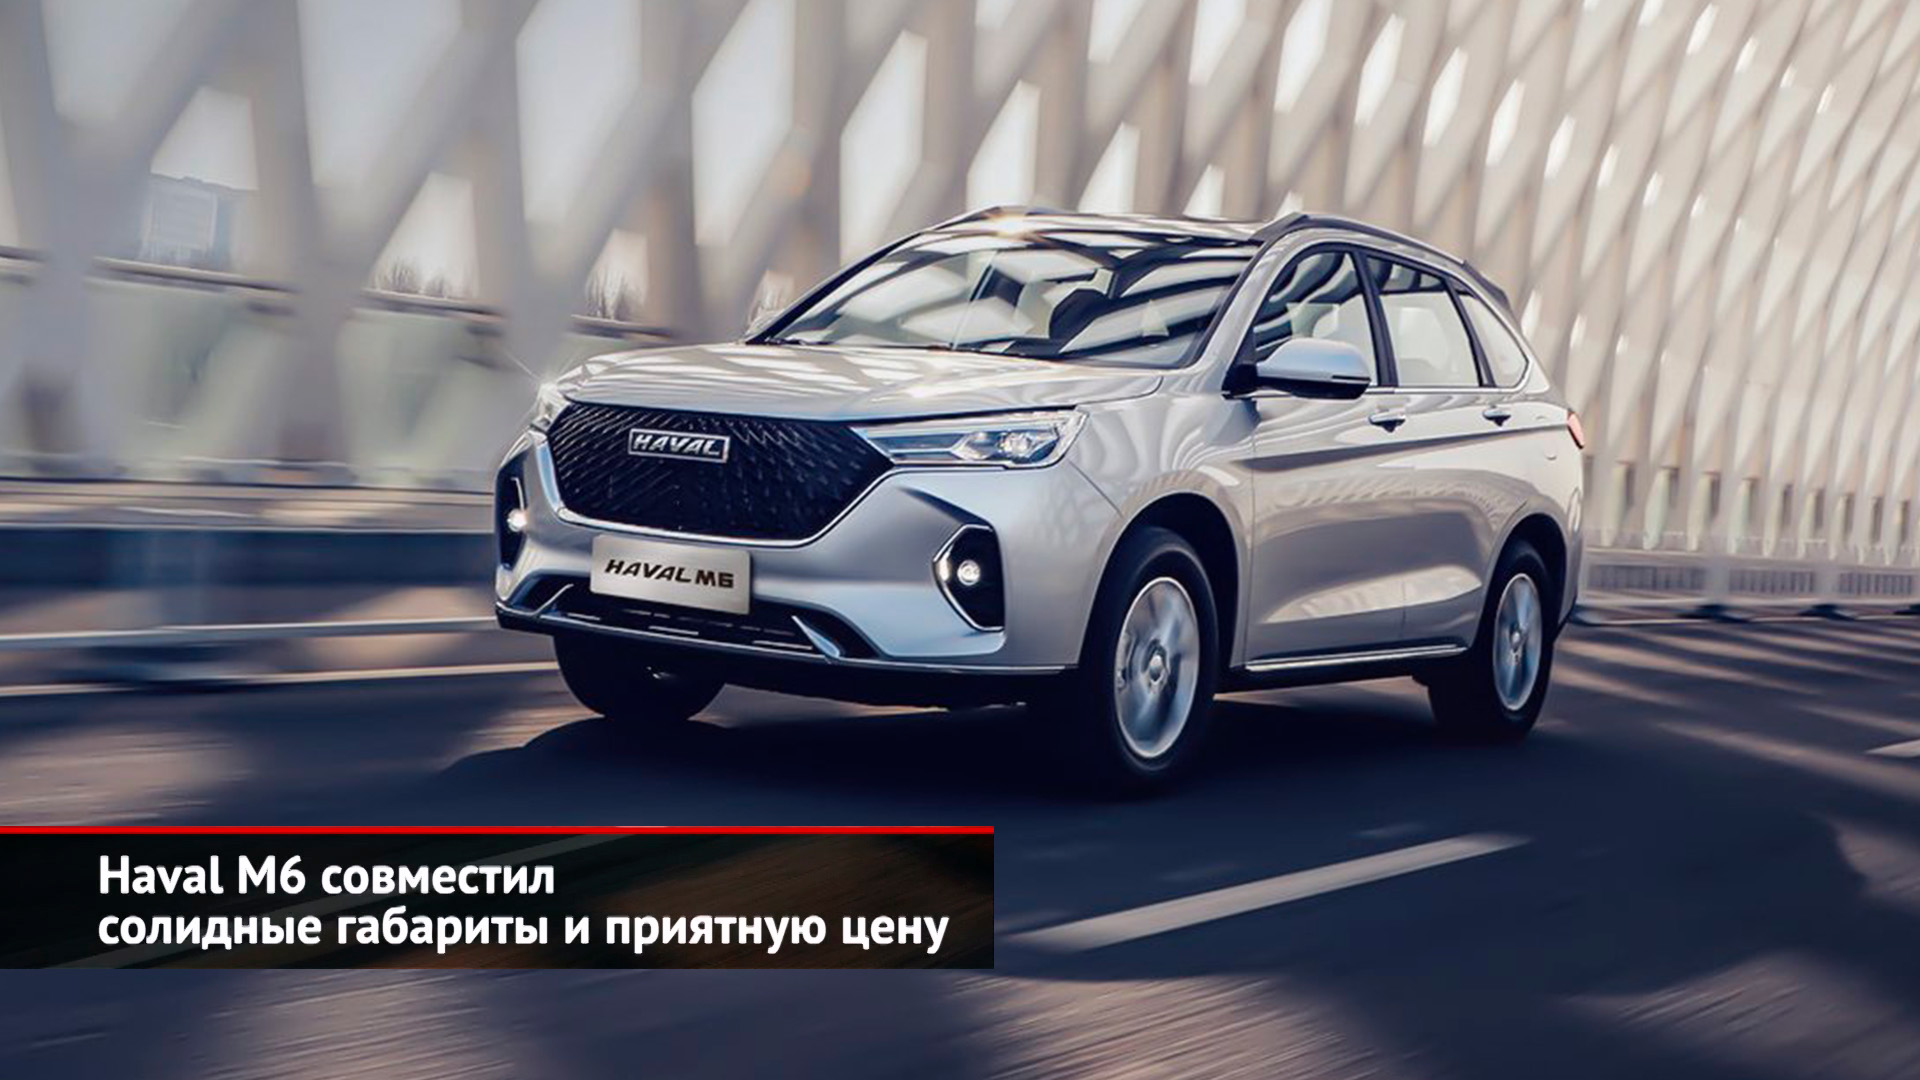 Hyundai Accent, Haval M6 и Toyota Camry пробираются через Казахстан | Новости с колёс №2453